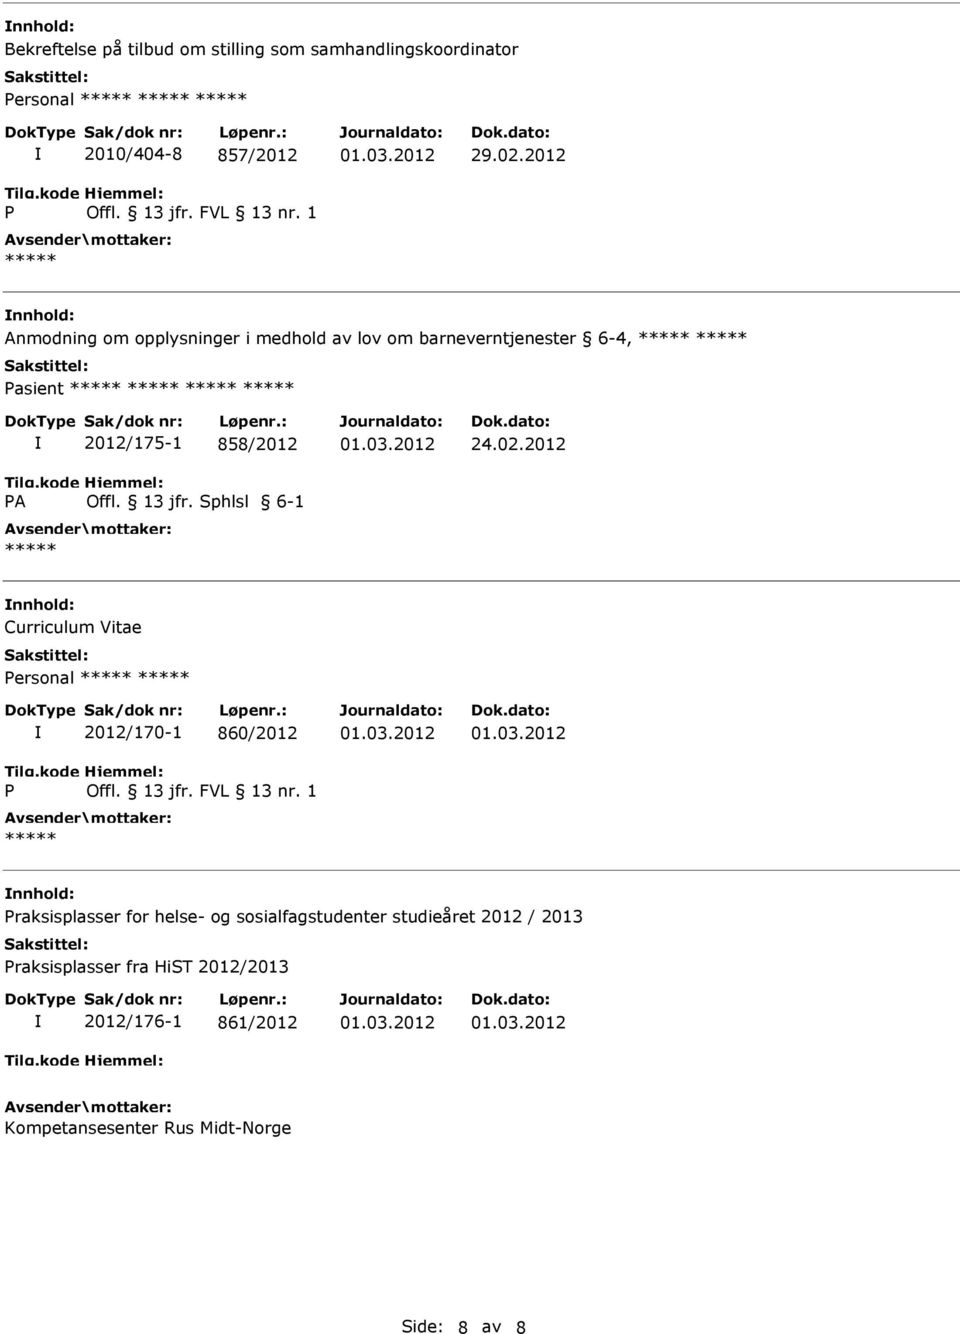 2012 nnhold: Curriculum Vitae ersonal 2012/170-1 860/2012 nnhold: raksisplasser for helse- og